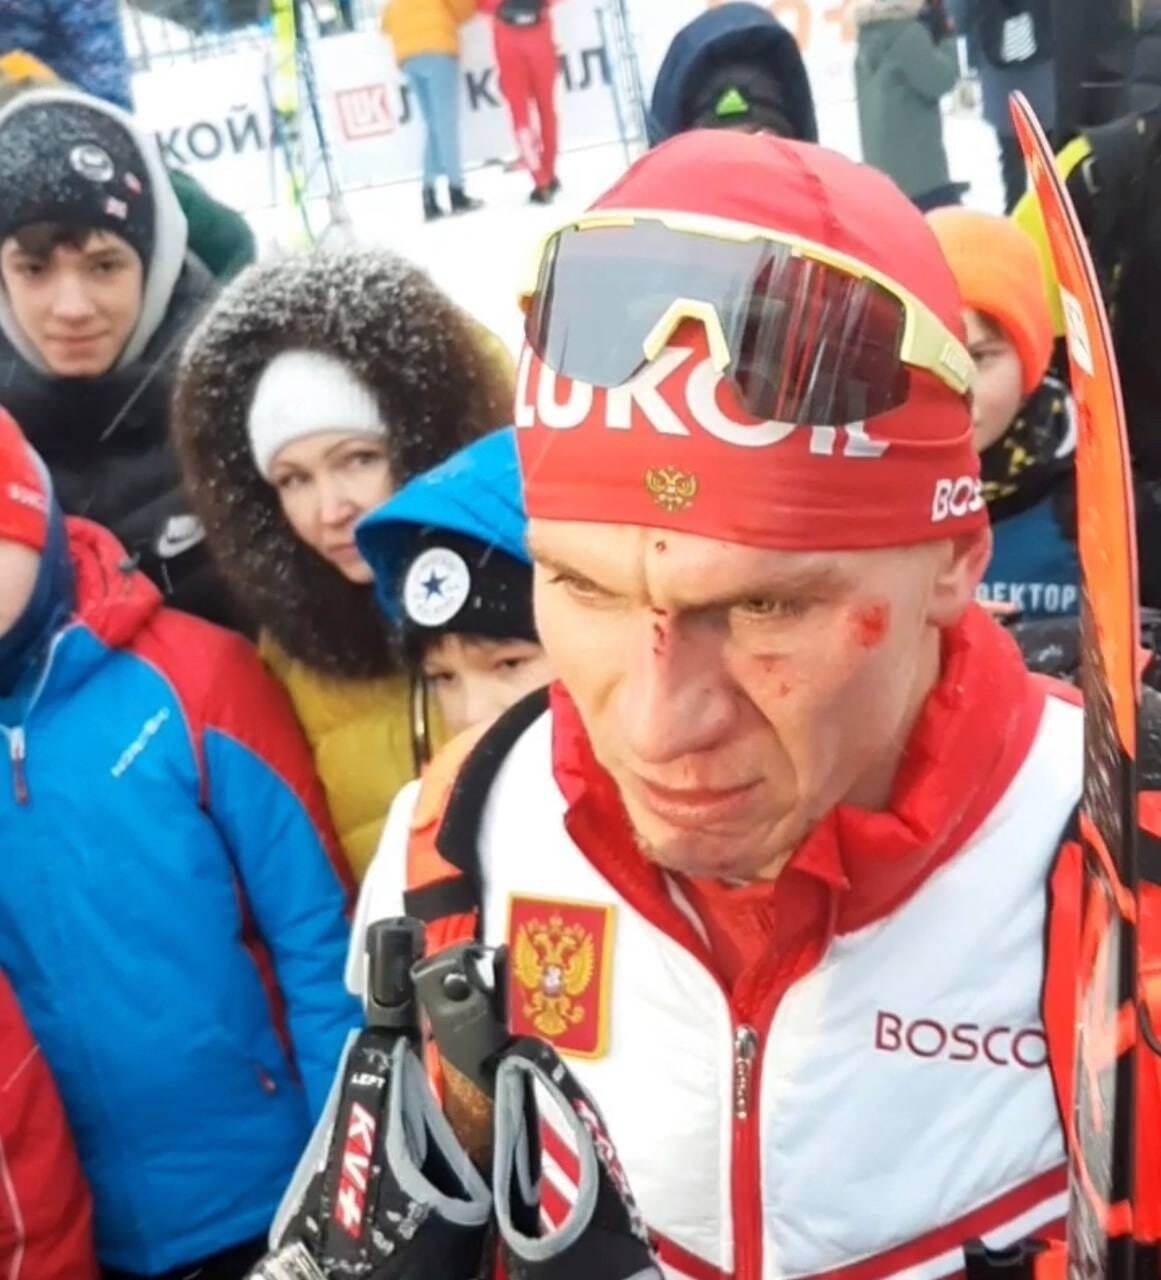 До потери сознания и крови: лучшие лыжники России столкнулись во время гонки Кубка РФ. Видео